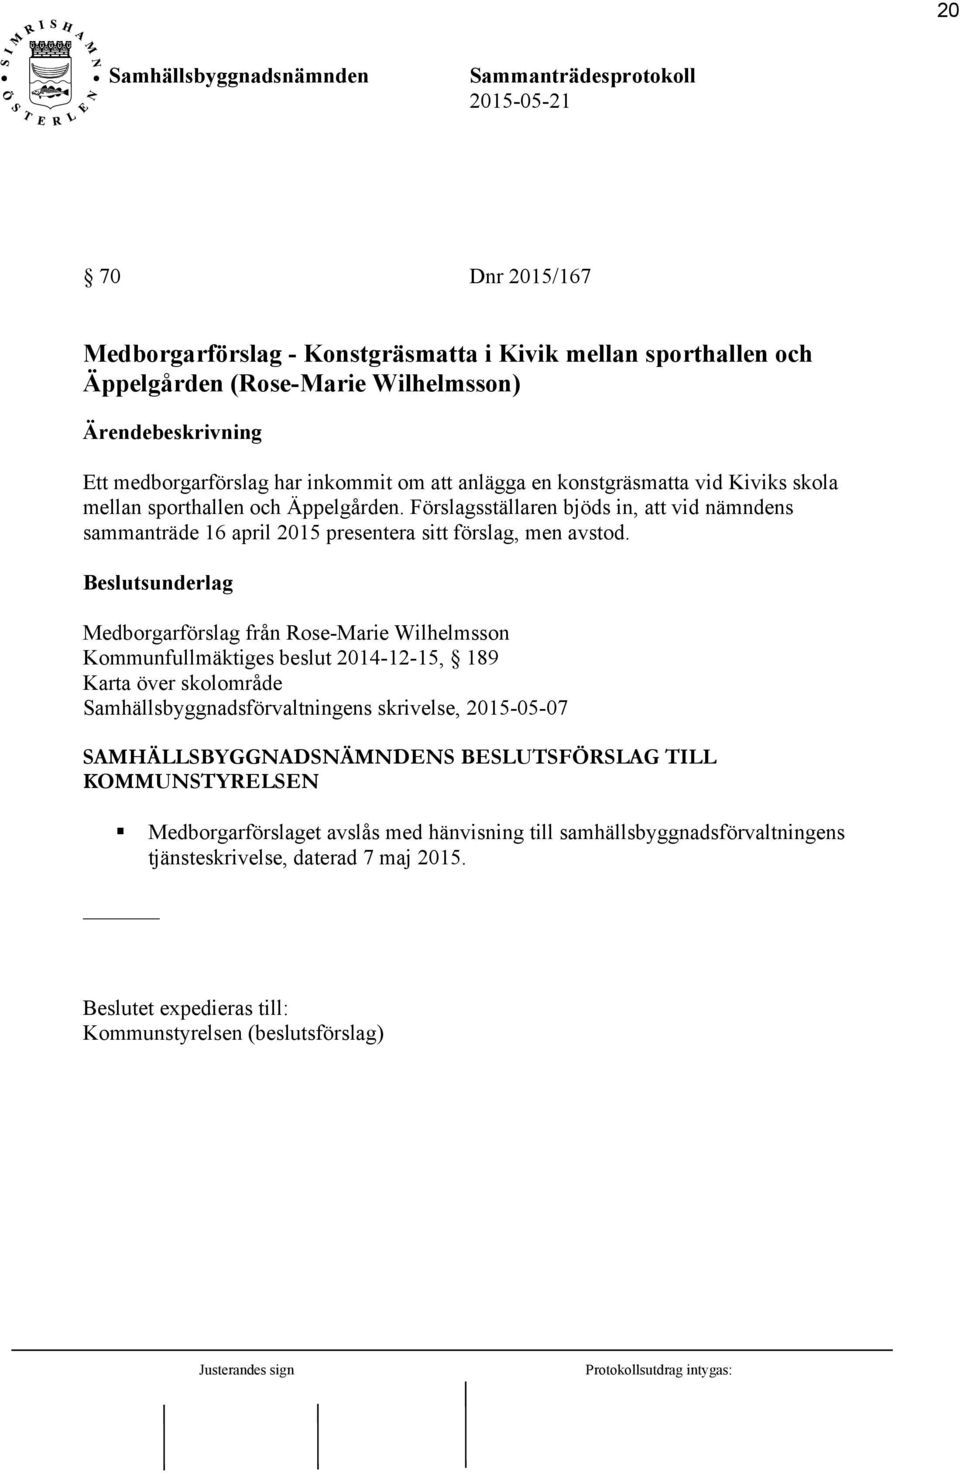 Medborgarförslag från Rose-Marie Wilhelmsson Kommunfullmäktiges beslut 2014-12-15, 189 Karta över skolområde Samhällsbyggnadsförvaltningens skrivelse, 2015-05-07 SAMHÄLLSBYGGNADSNÄMNDENS